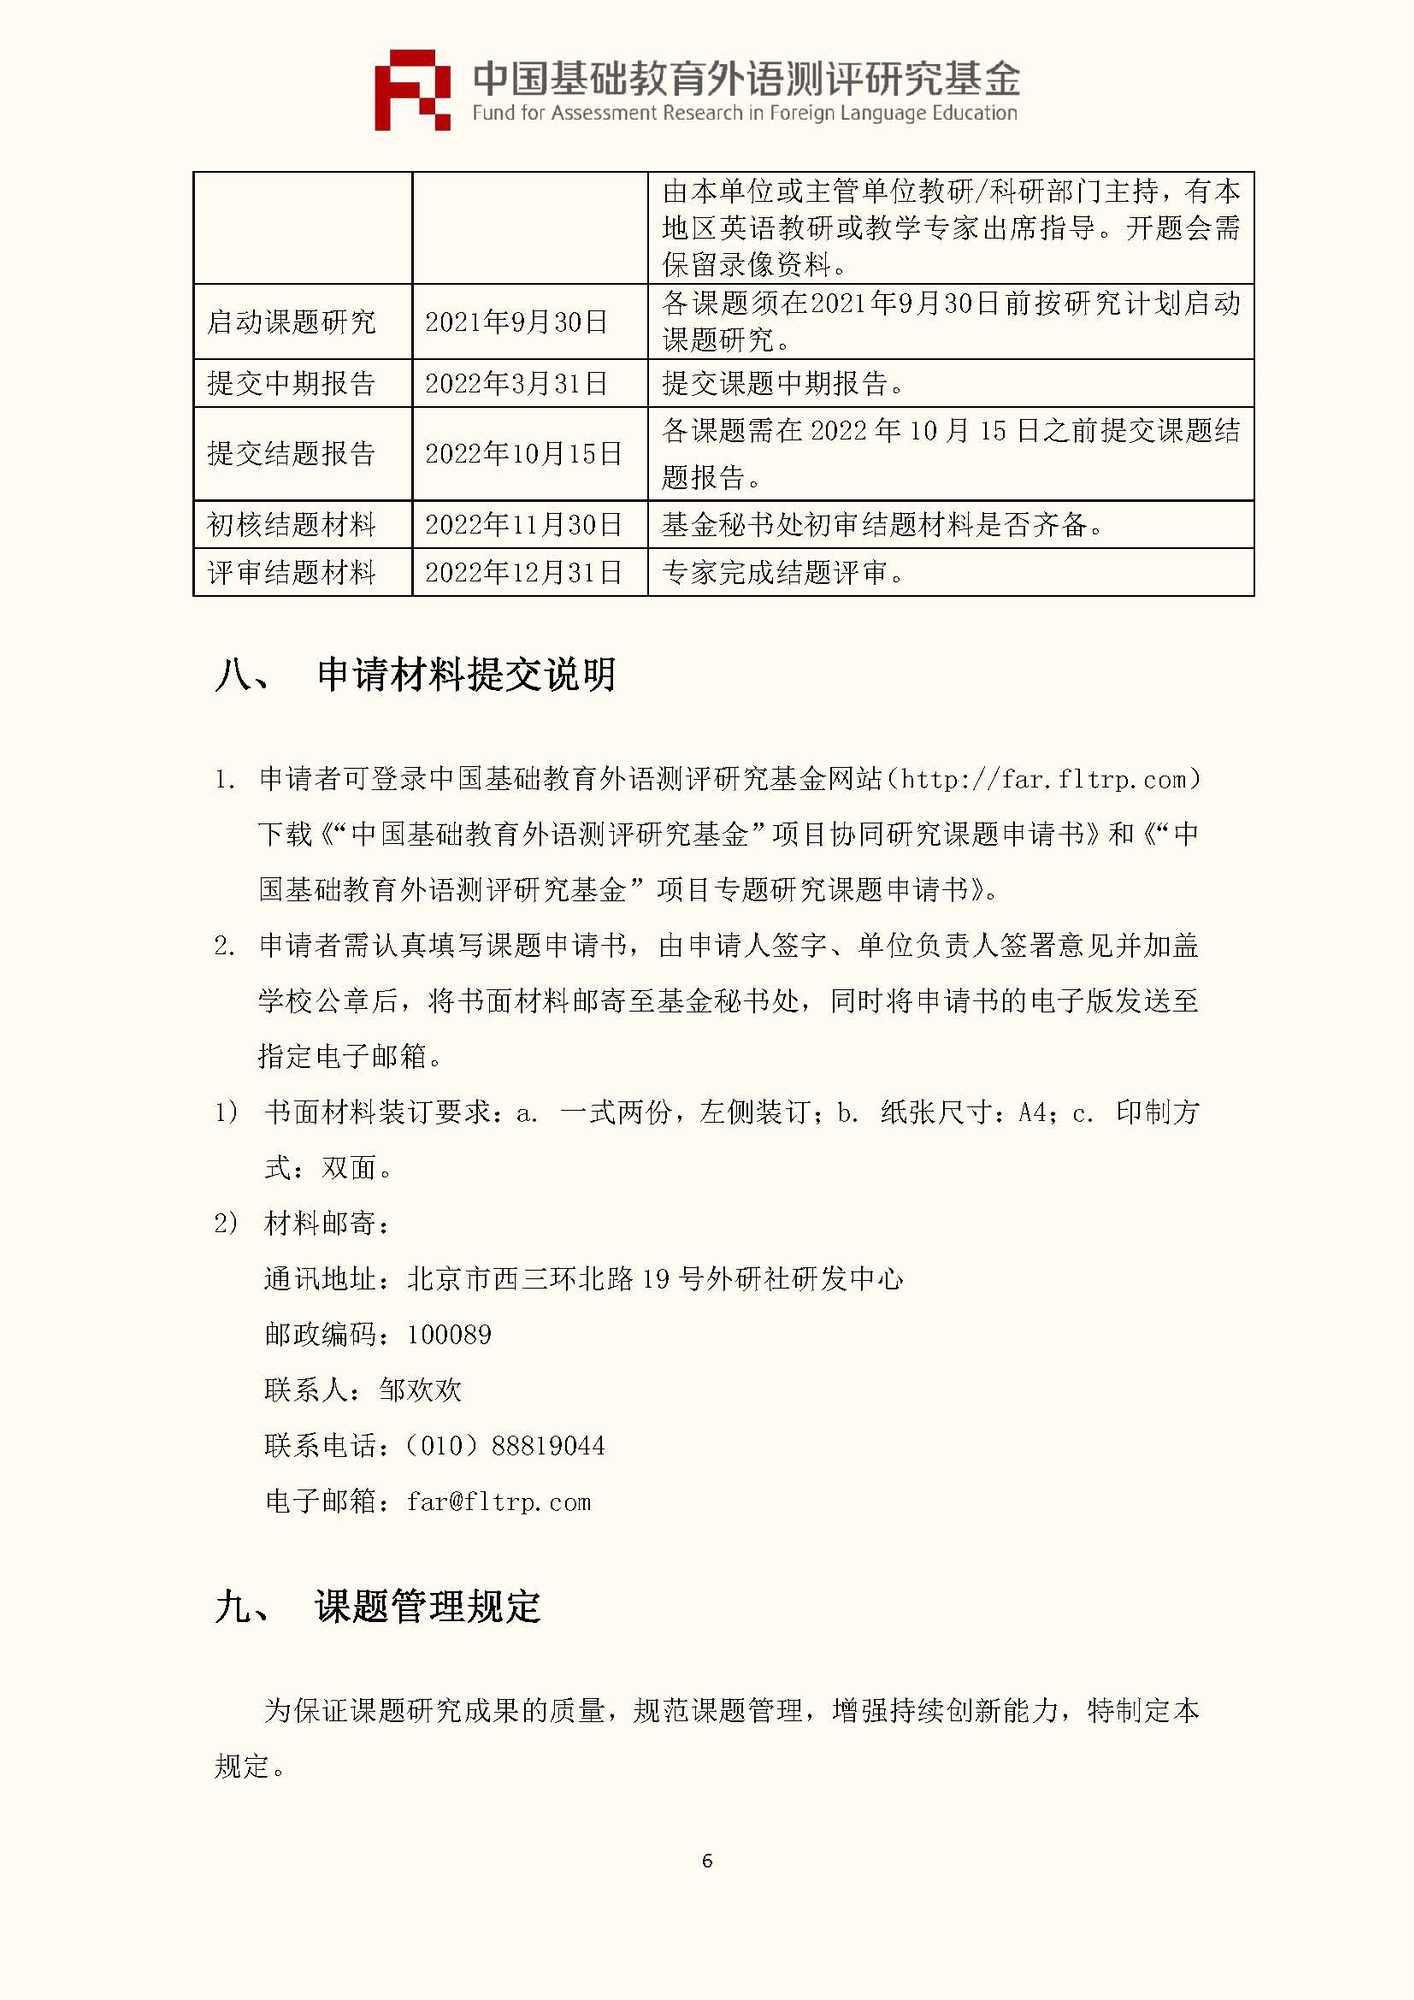 文件1：“中国基础教育外语测评研究基金”第三期课题申报指南_页面_08